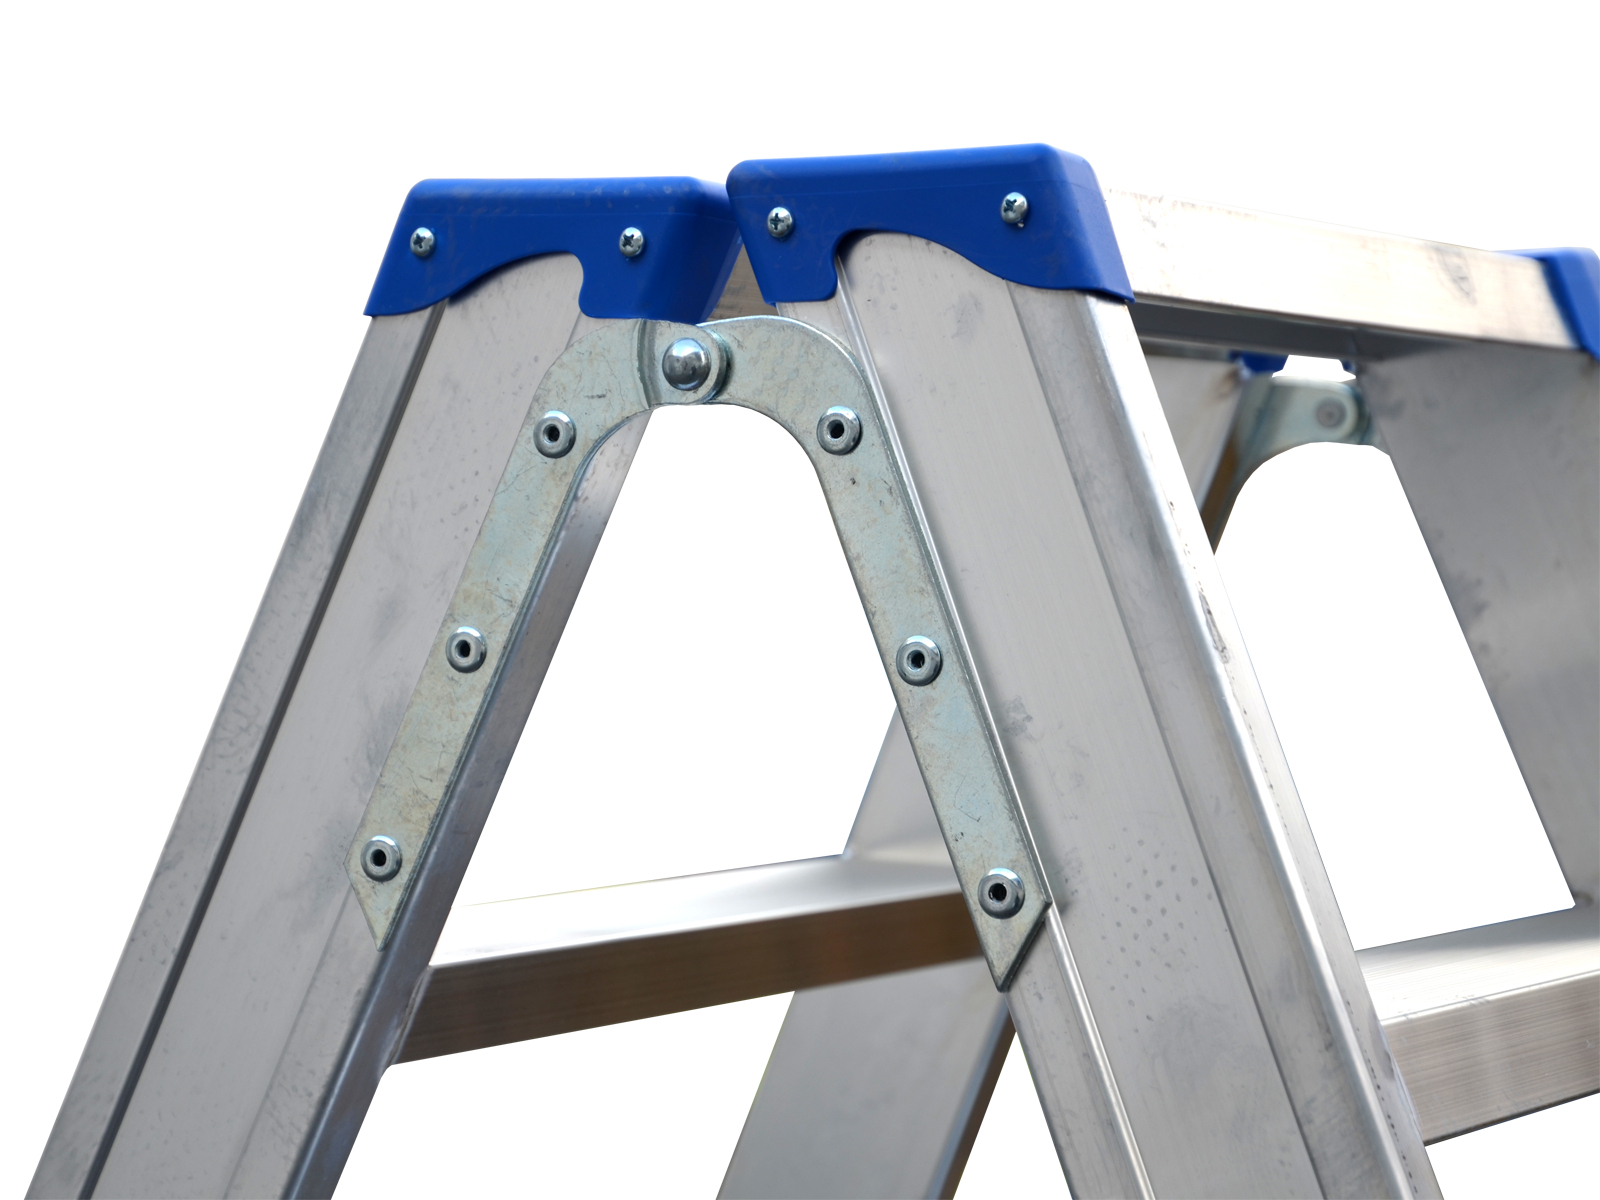 Stufenstehleiter beidseitig begehbar mit Handlauf links und rechts auf einem Leiternteil, 2x6 Sprossen/Stufen